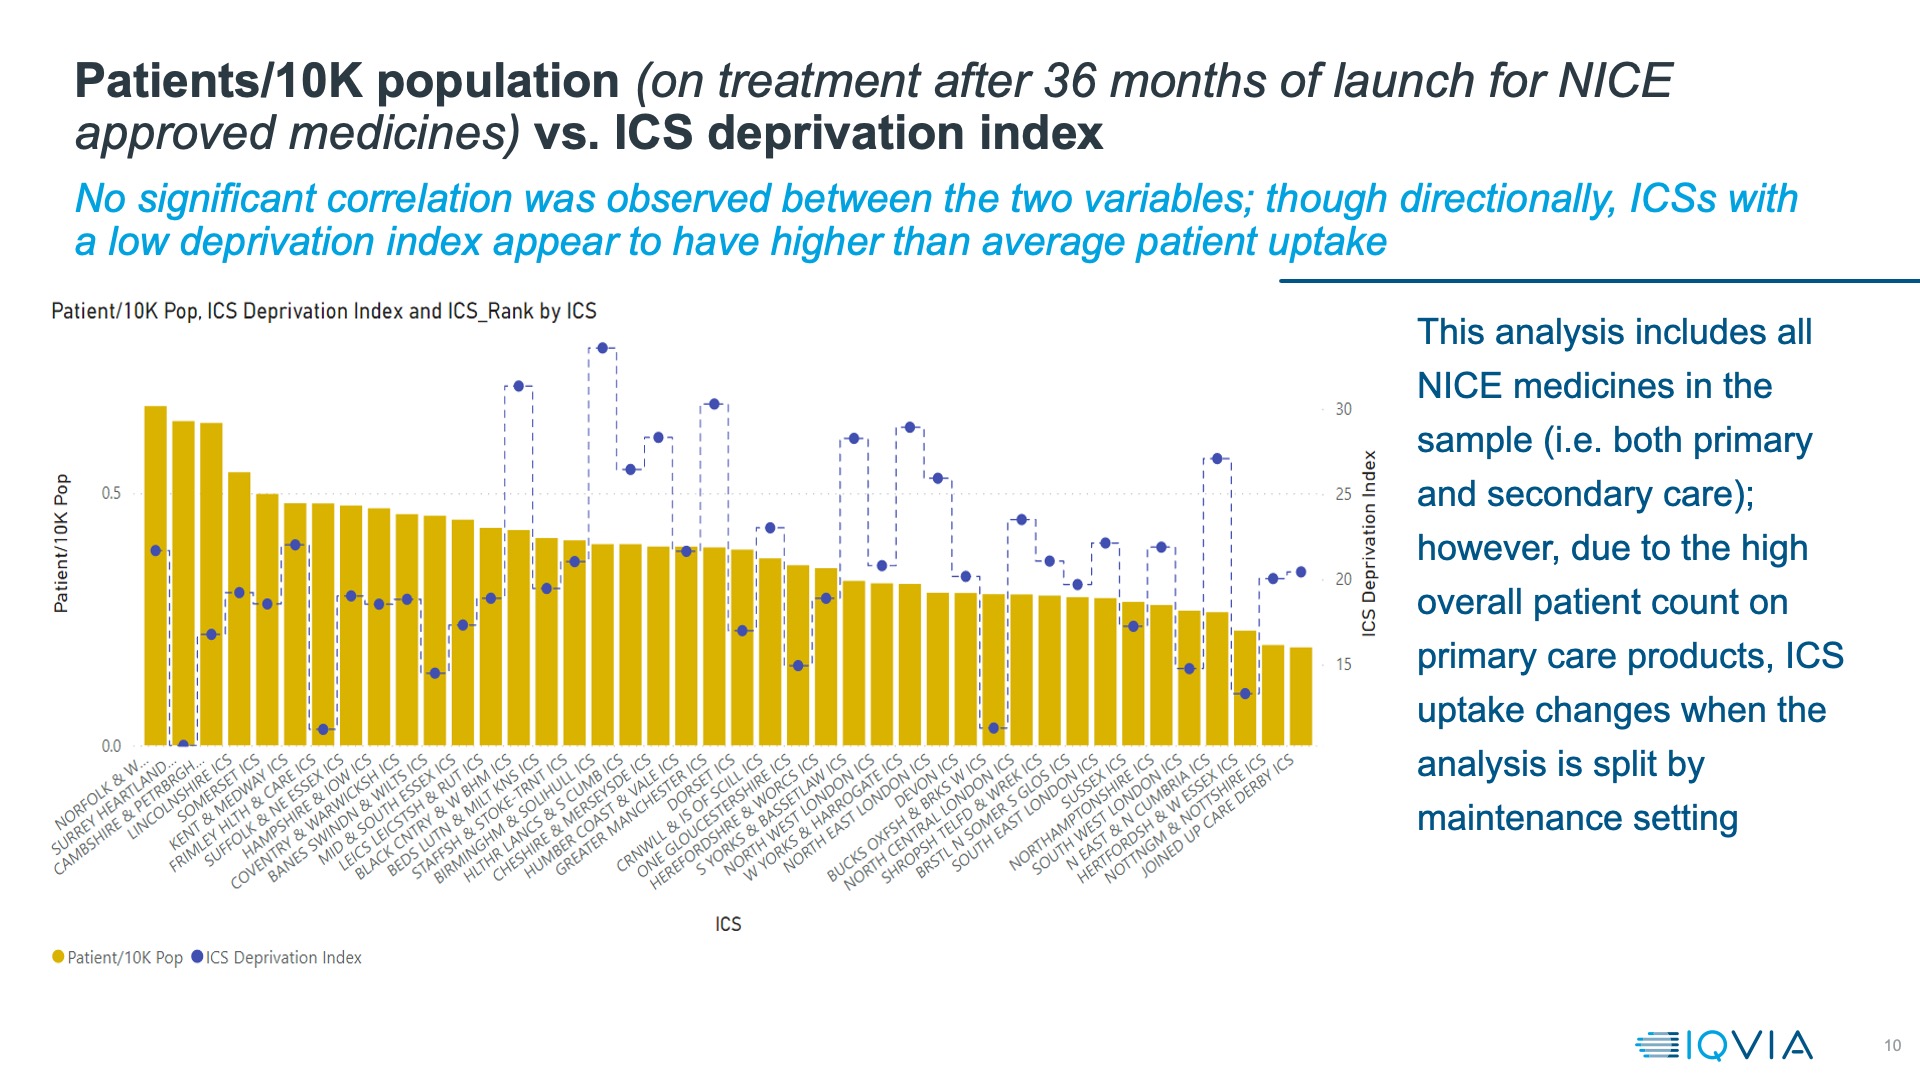 Patients/10,000 Populations versus ICS Deprivation Index